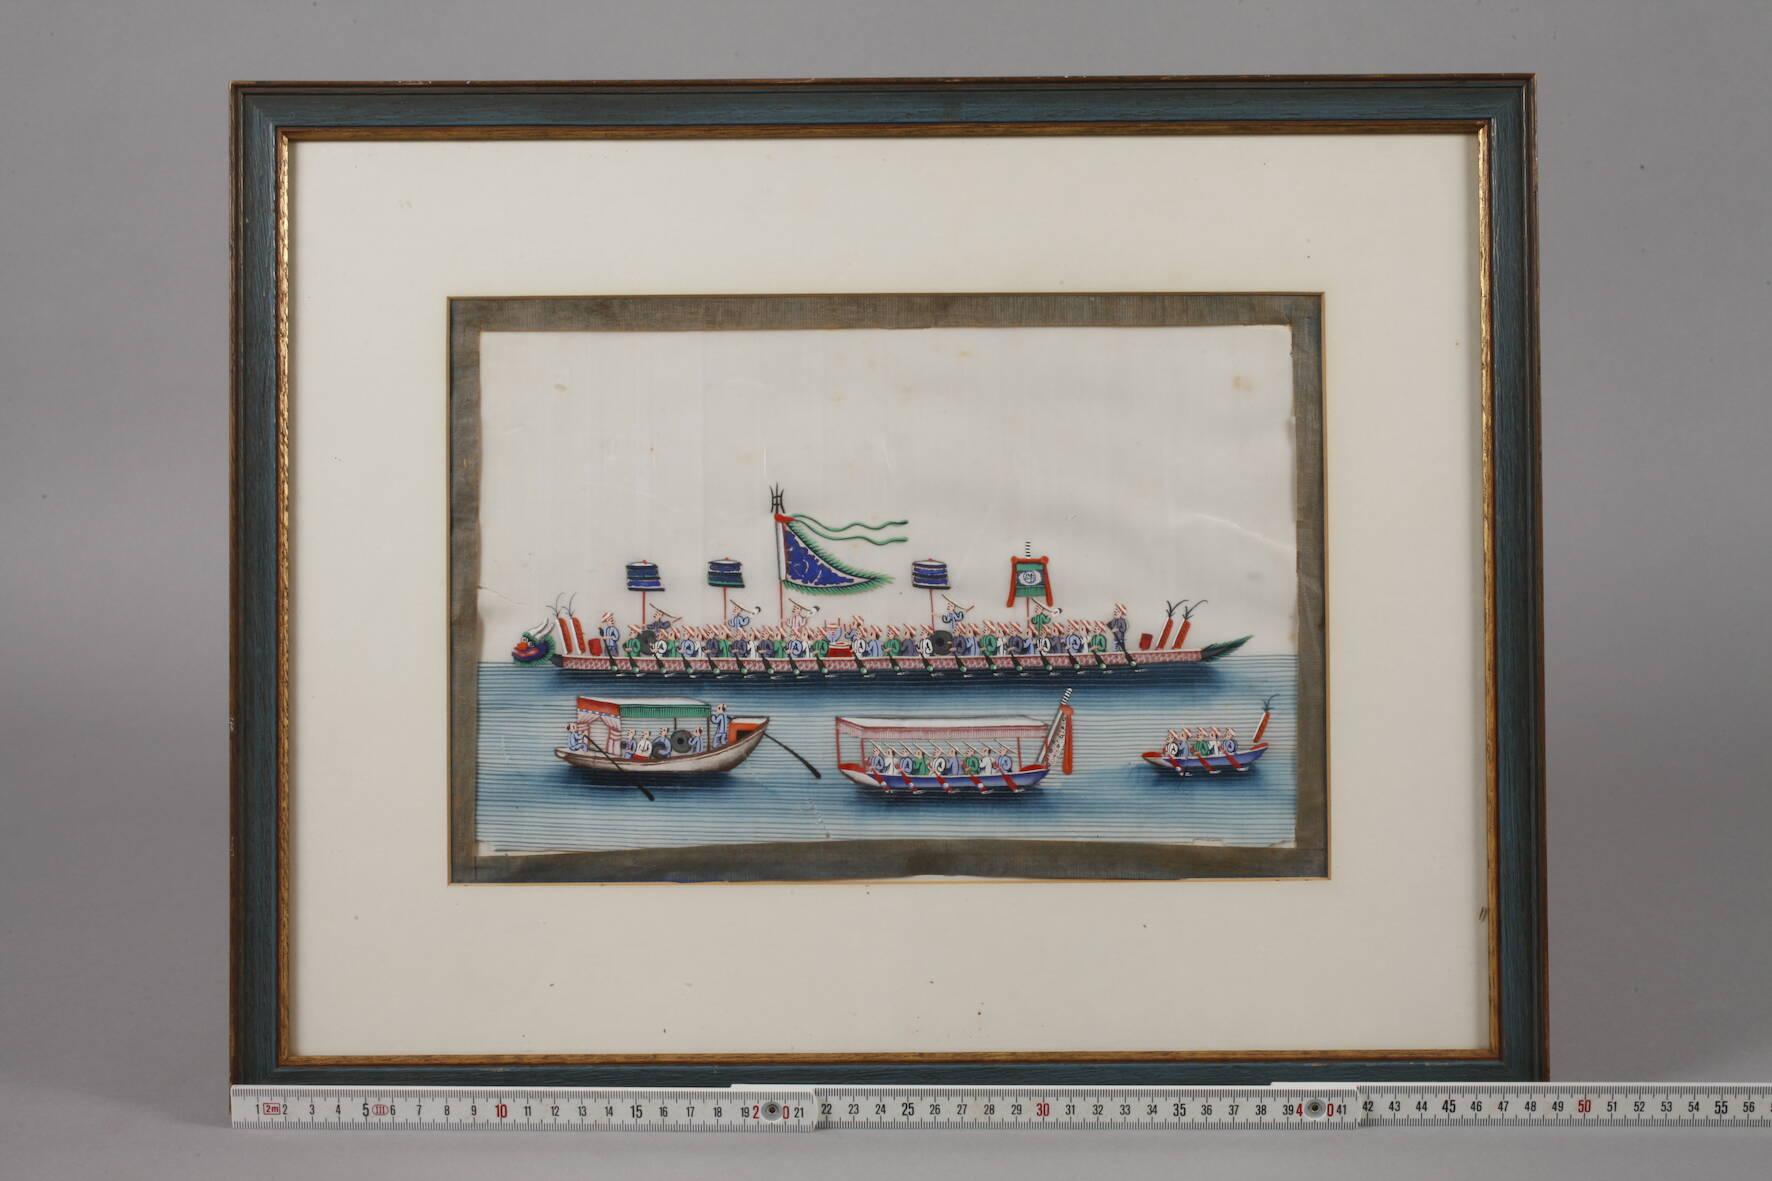 Une belle représentation du bateau-dragon impérial chinois en mer. Le fabricant et l'année de production sont inconnus, mais il est probable qu'il s'agisse du XIXe siècle. L'œuvre d'art est une gouache sur papier de riz. Cadre moderne. 

Condition